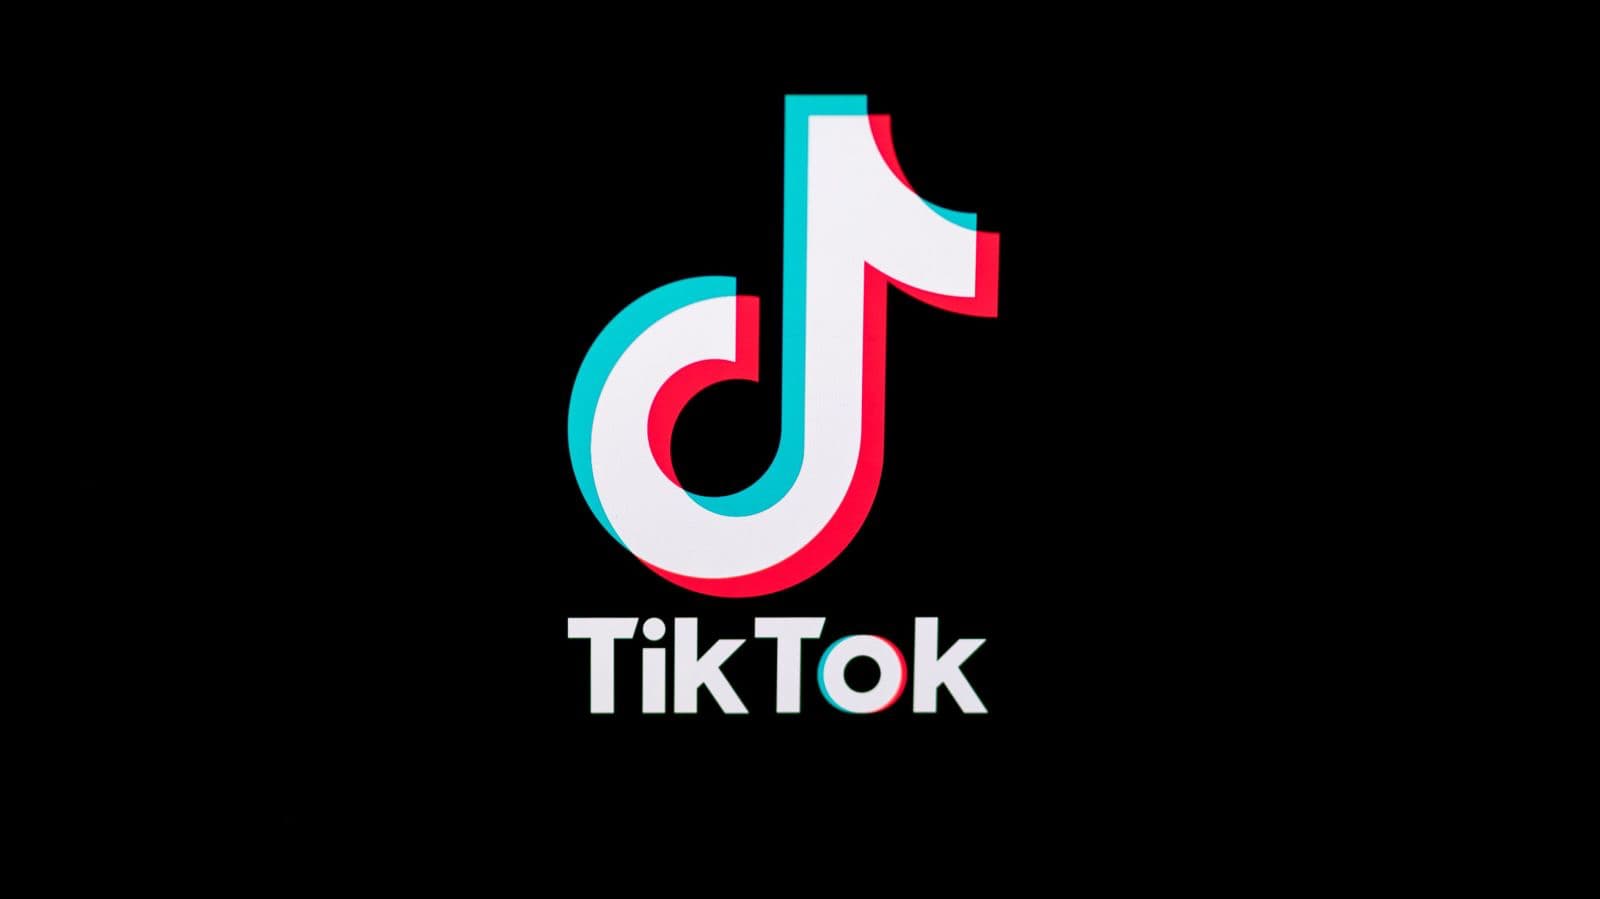 Aplicativo TikTok começa a ser banido em vários países - Metropolitana FM